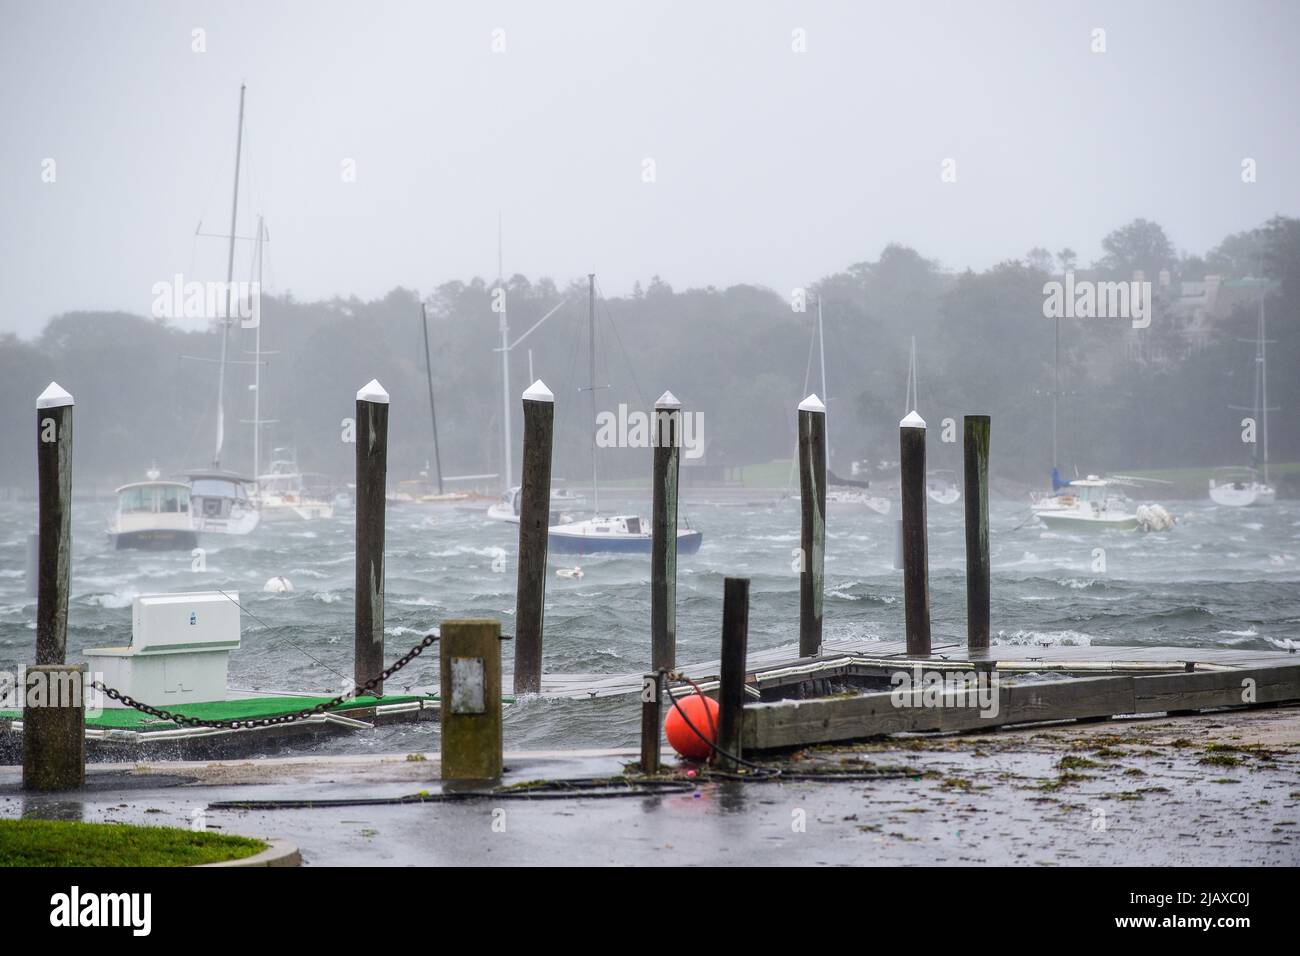 Photos de la tempête tropicale Henri de 2021 à Newport, Rhode Island. Vue sur les bateaux à voile et les quais pendant une tempête. Banque D'Images